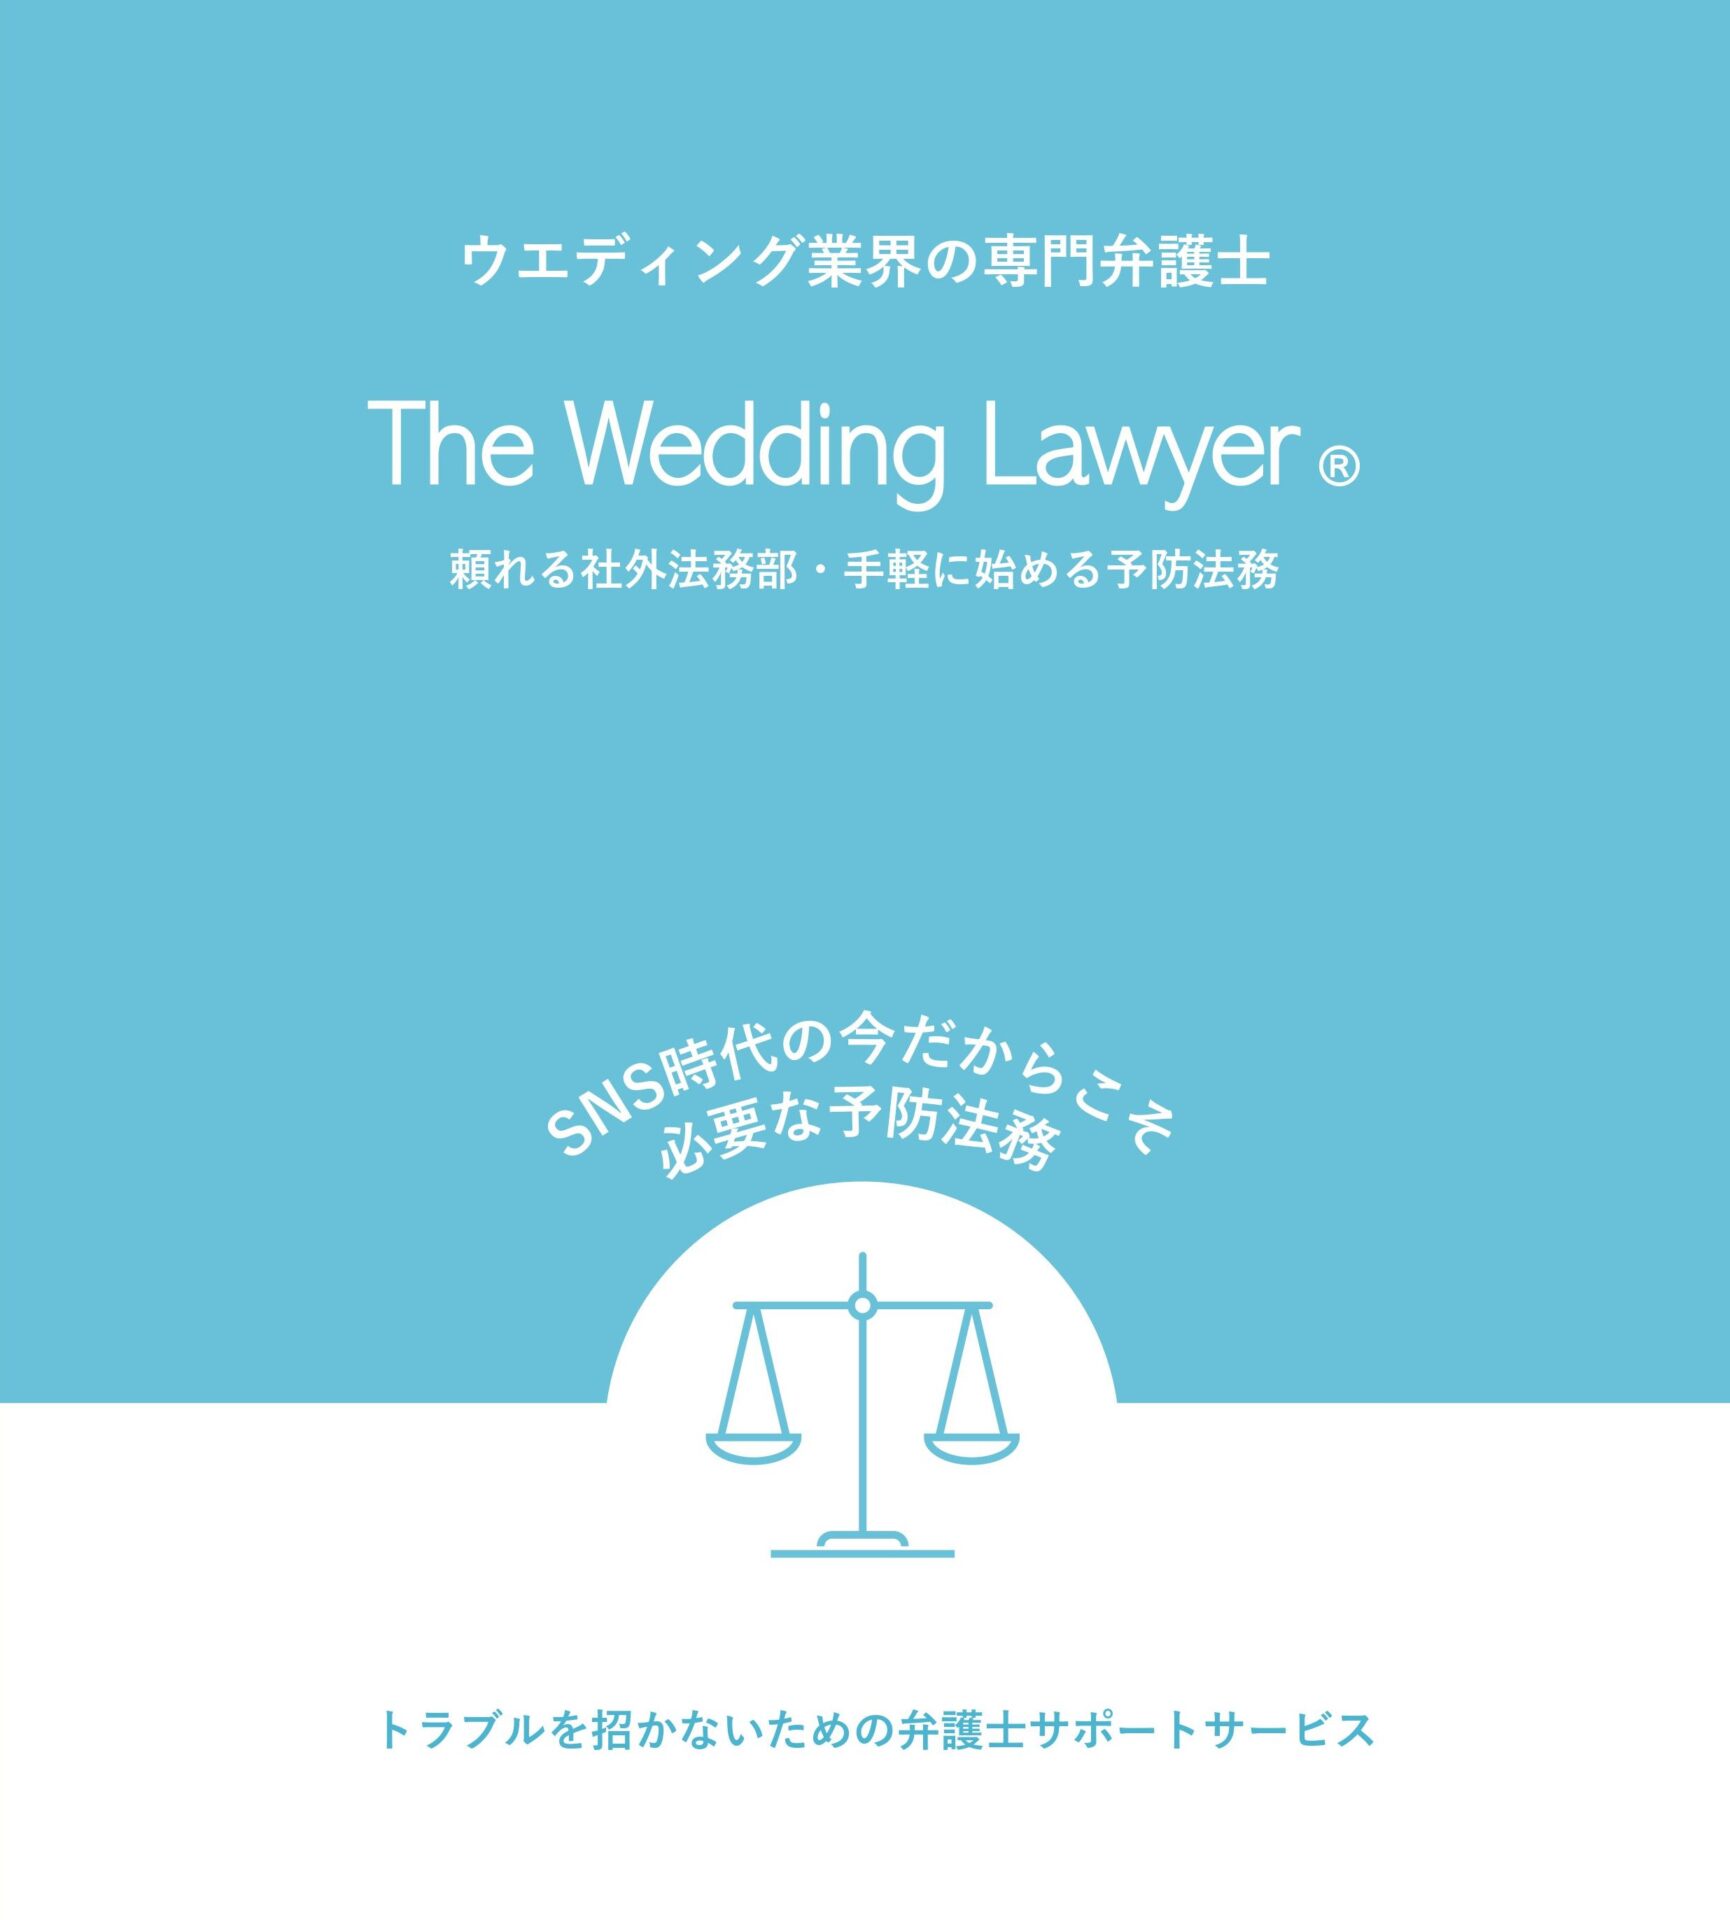 ウエディング業界専門の顧問契約プラン『The Wedding Lawyer®』